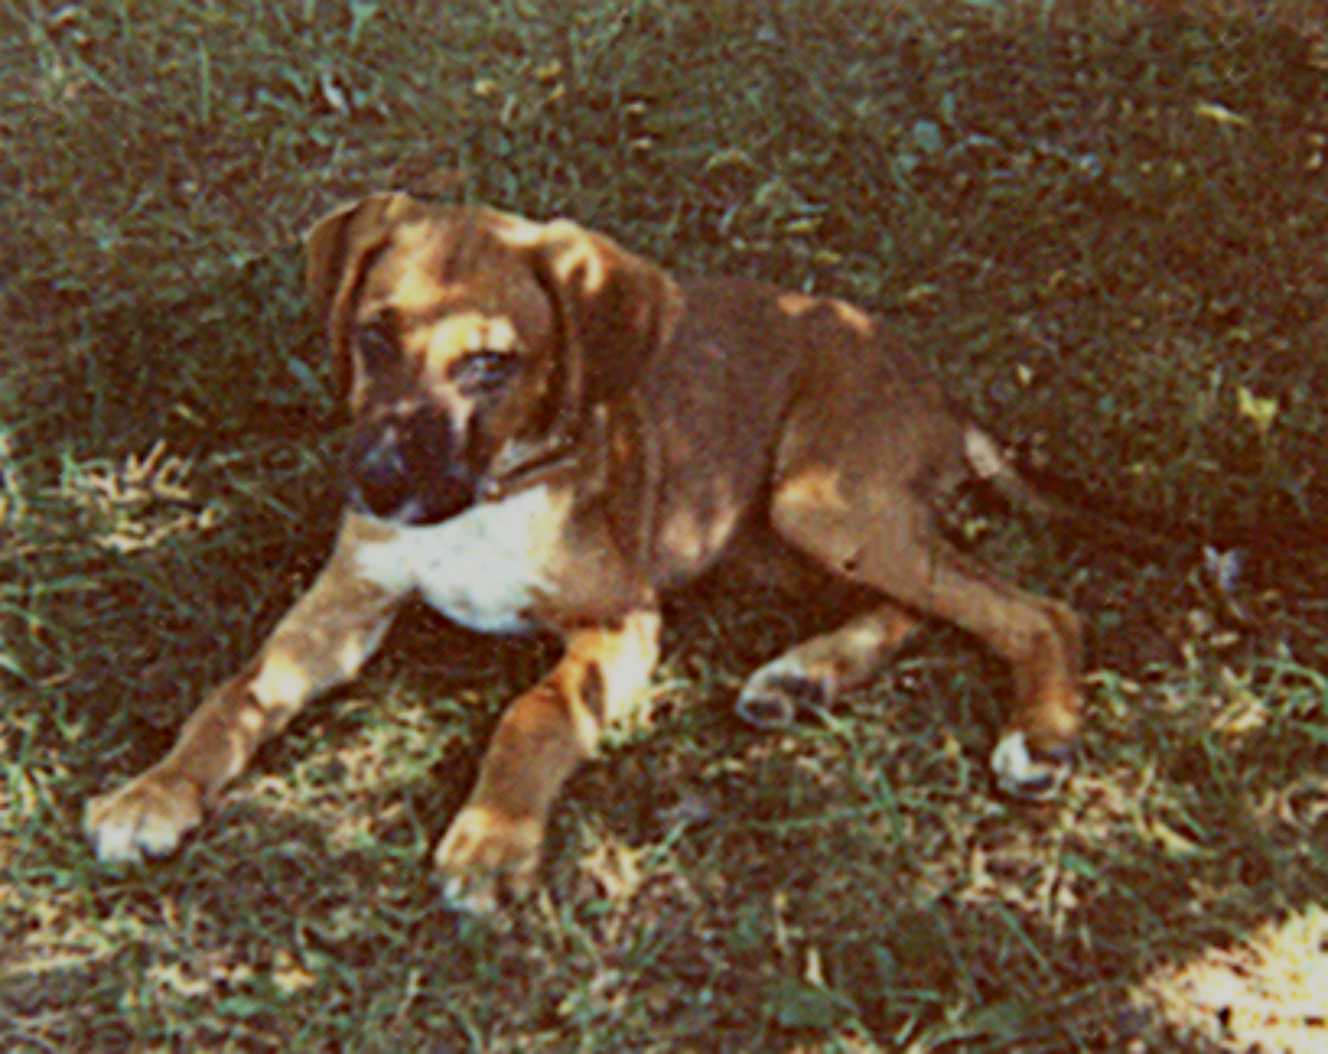 Cepheus as a puppy